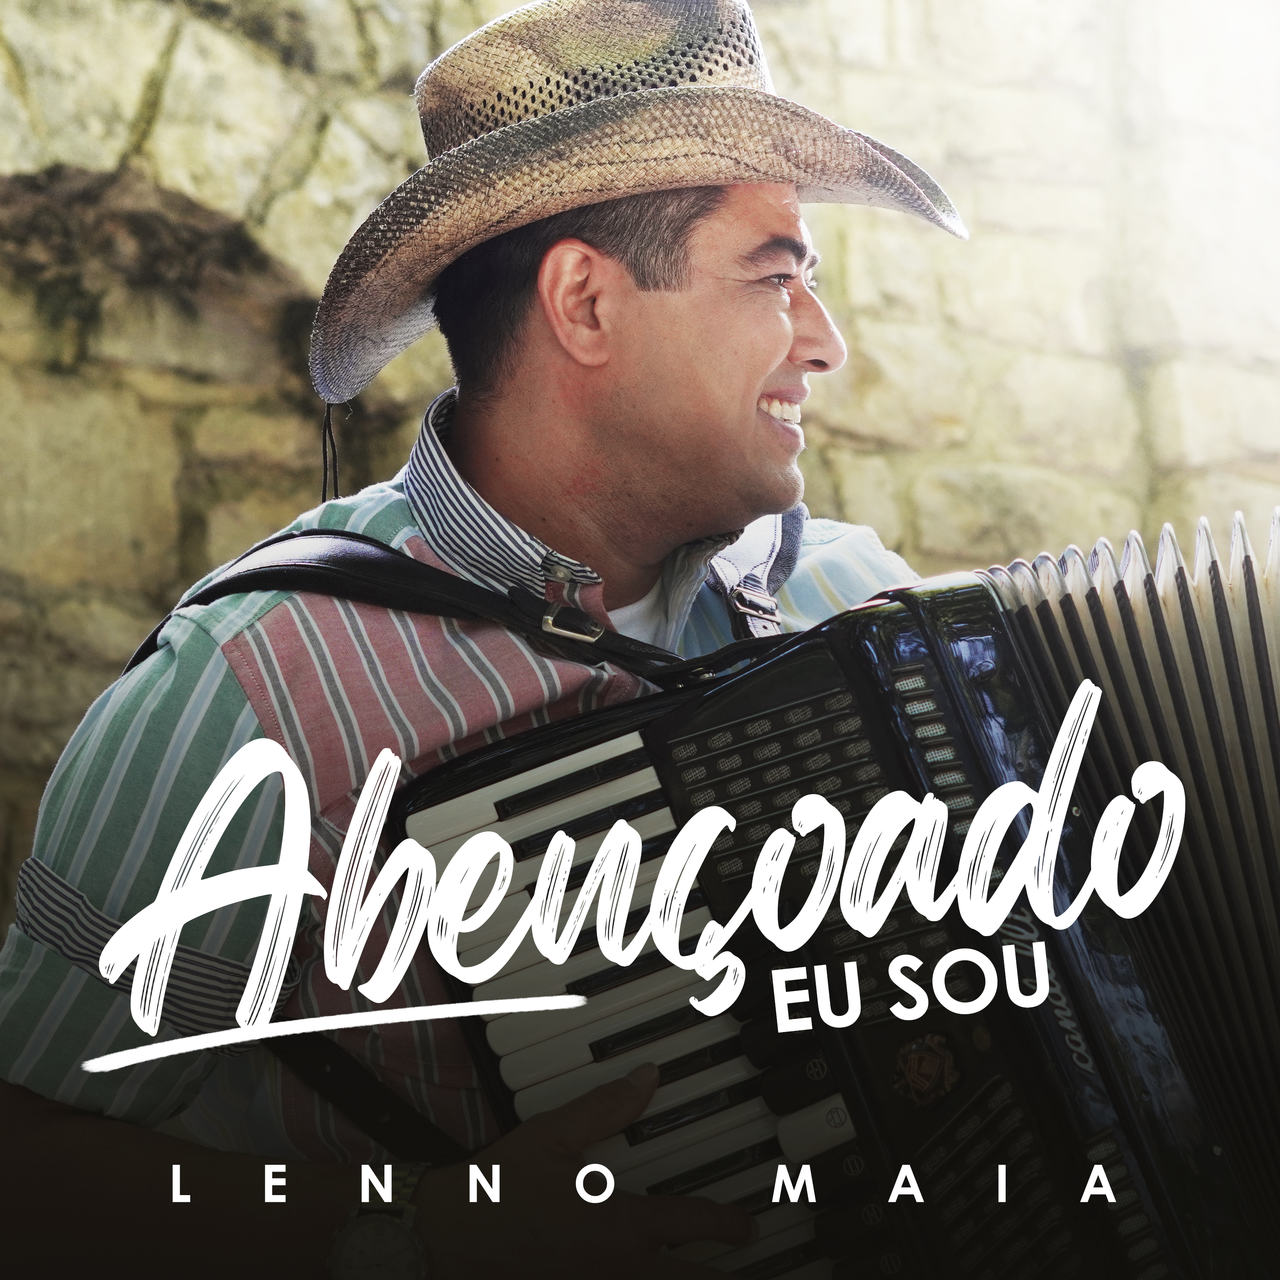 “Abençoado eu sou”, sertanejo Lenno Maia declara bênção em mais uma canção autoral 42